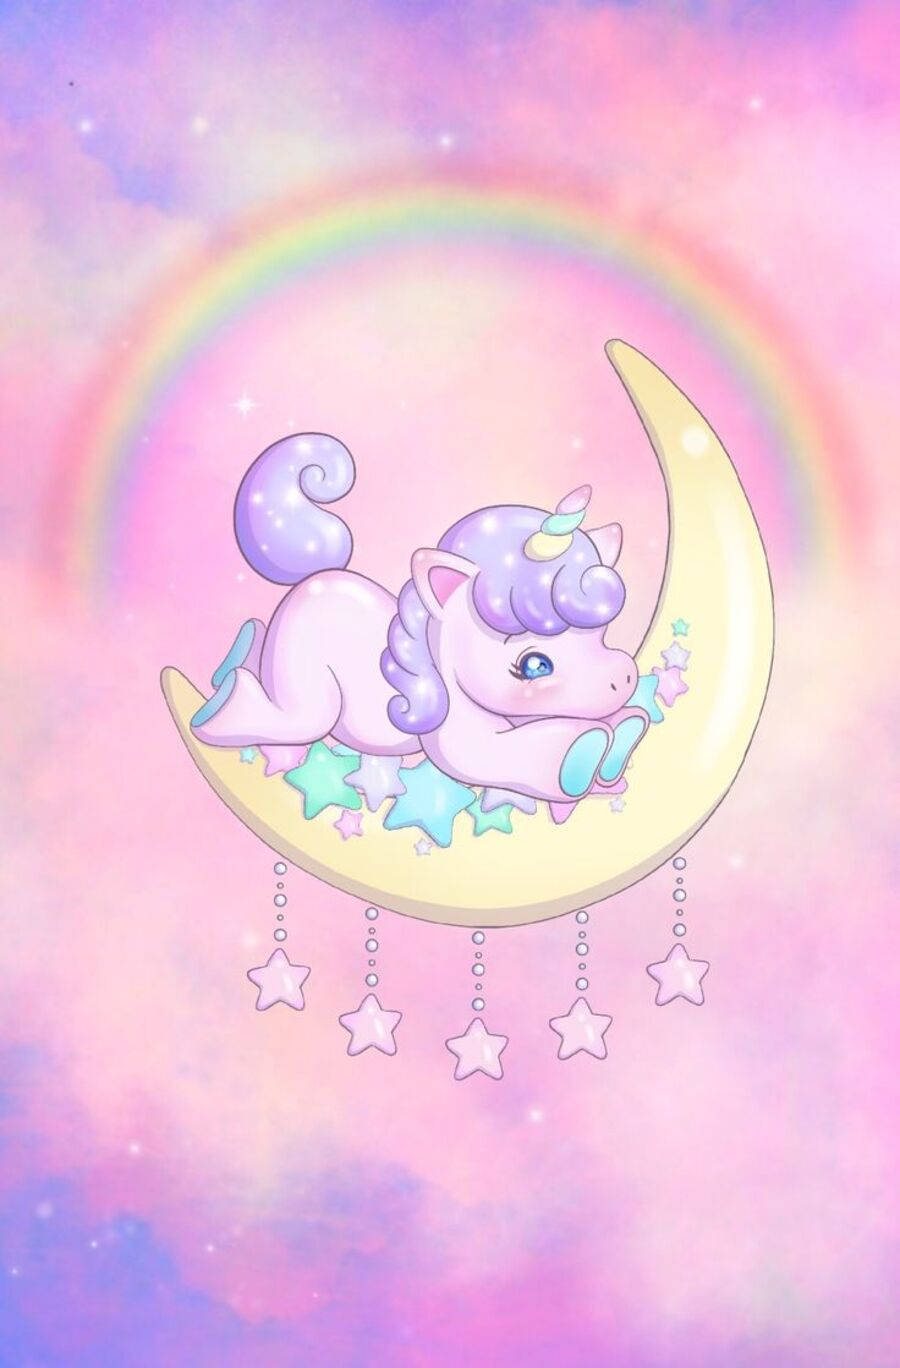 Galaxy Unicorn On Moon Cartoon Illustration Background